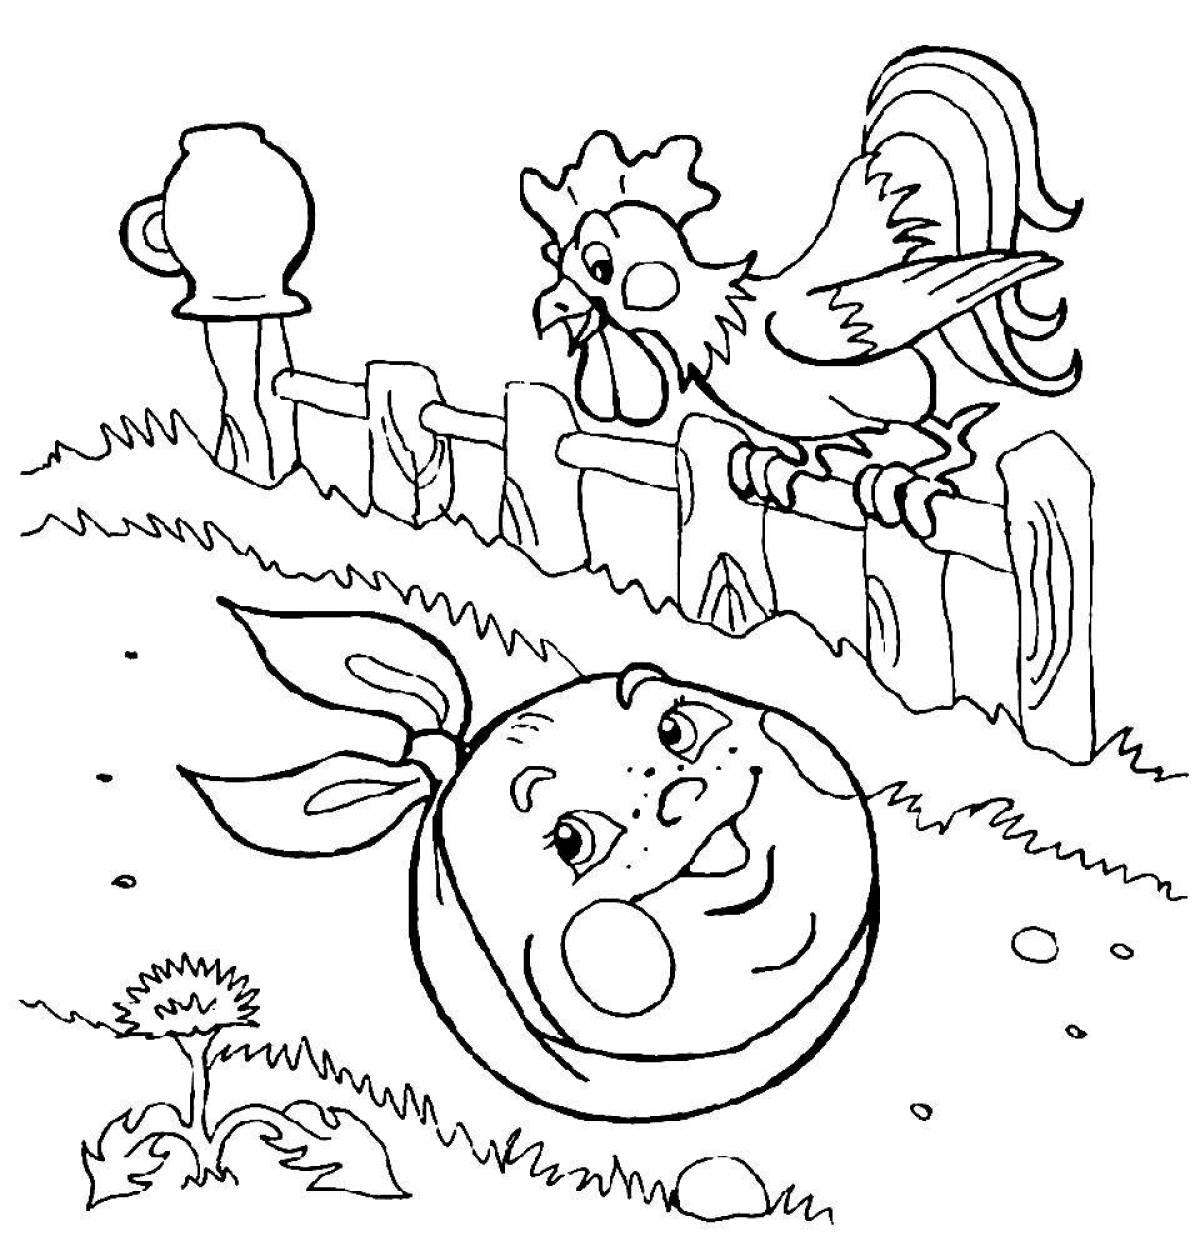 Mystical bun illustration for a fairy tale